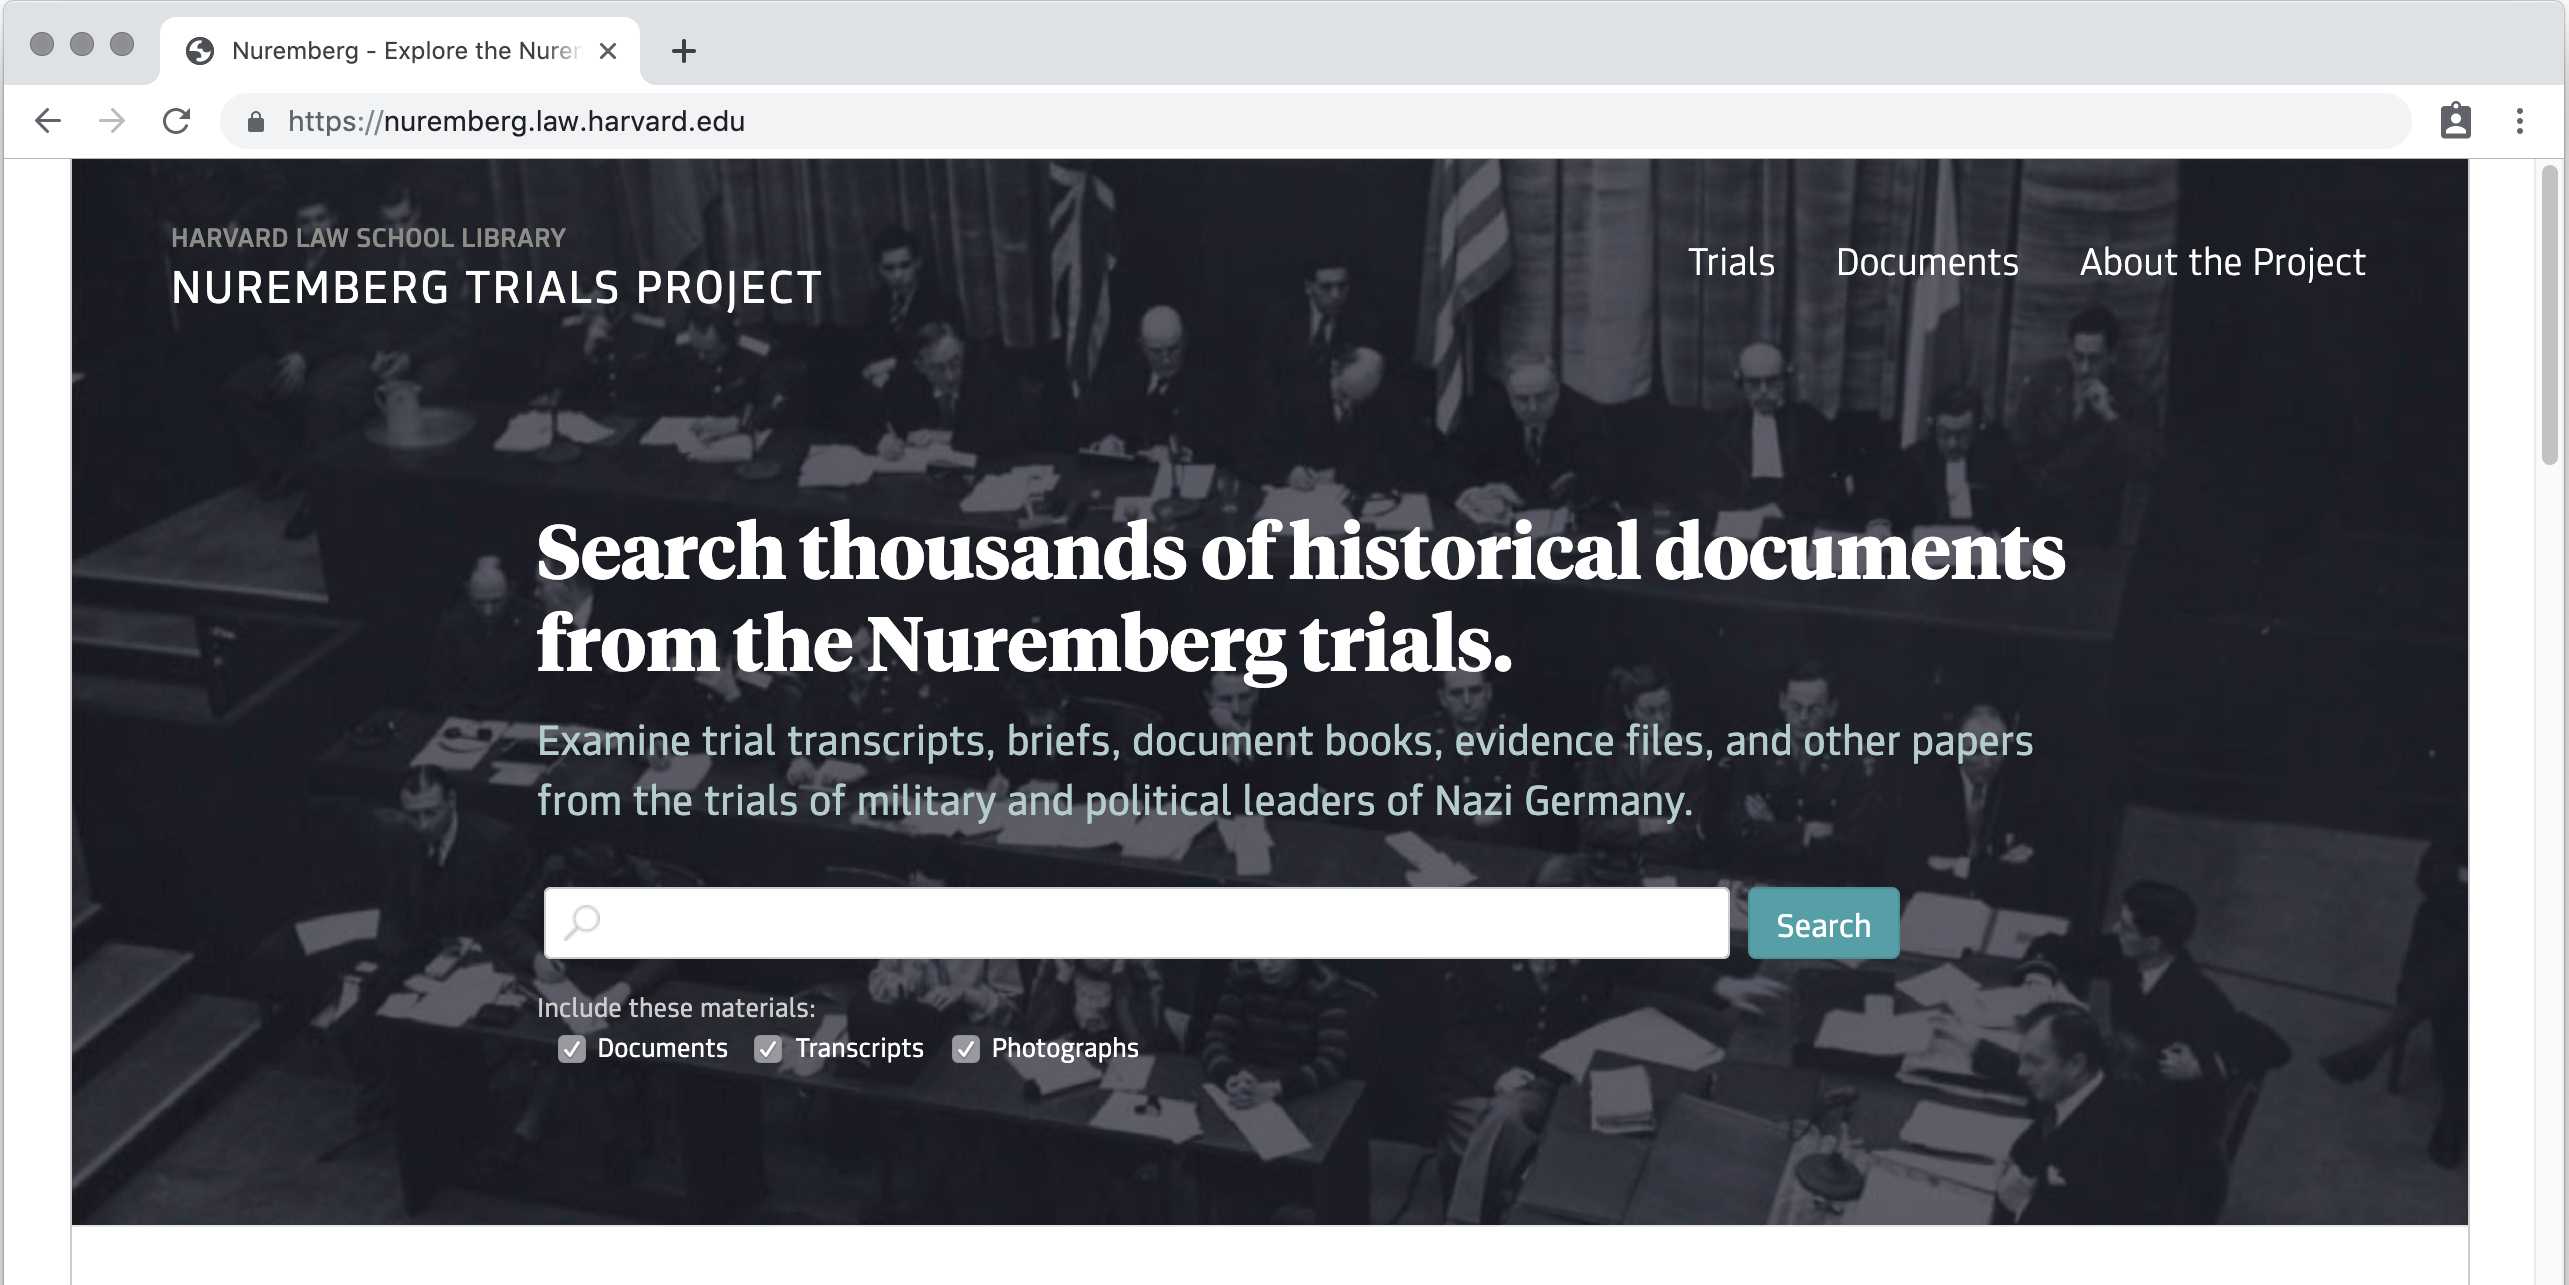 Nuremberg Trials Project website